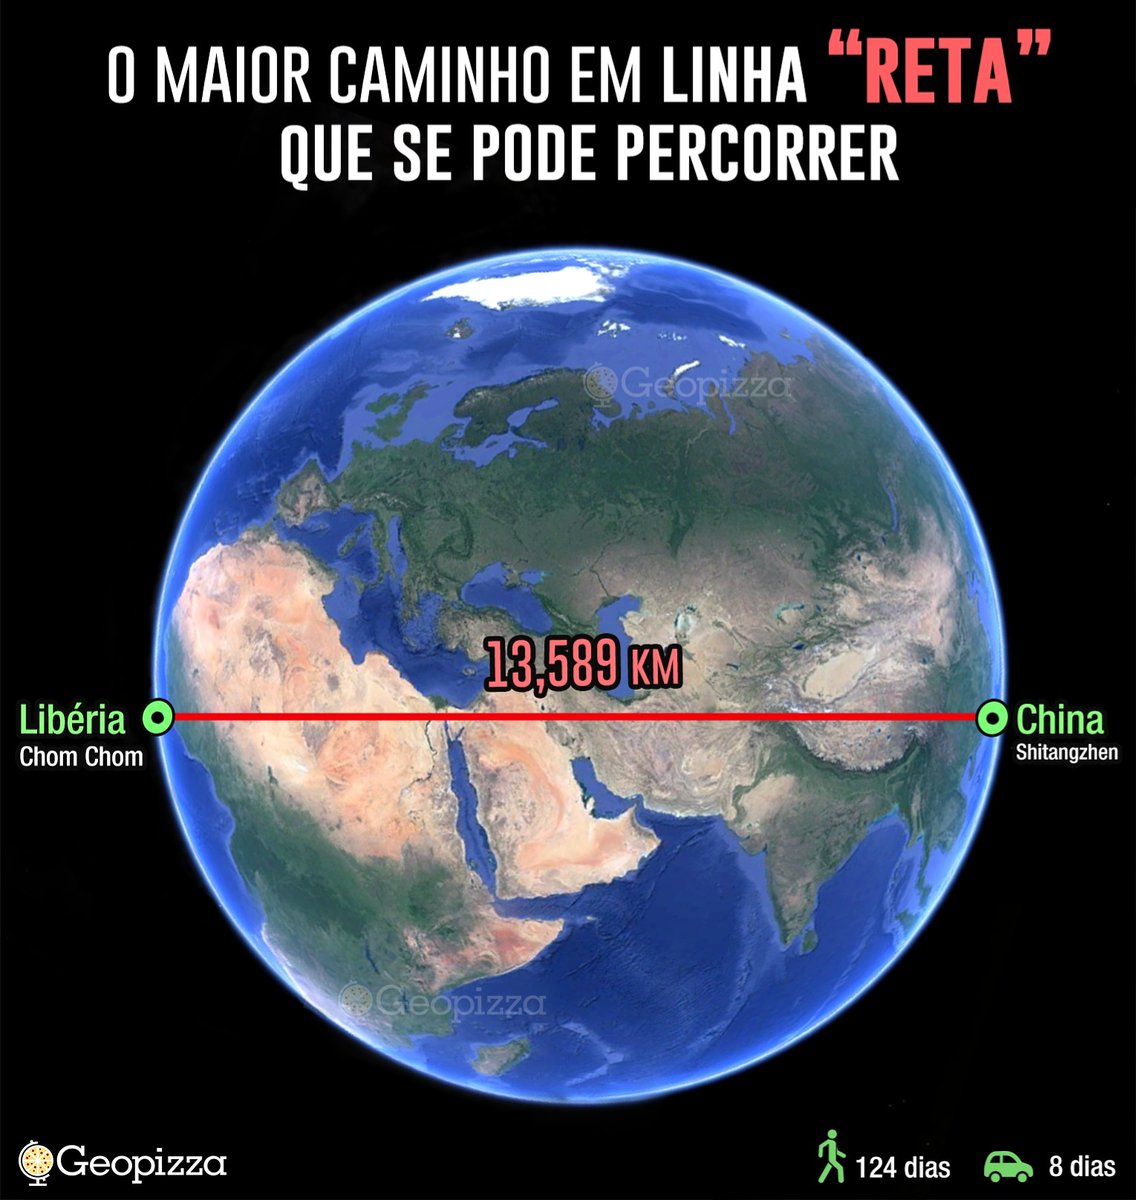 Geopizza Podcast on X: Exatas 142 Suíças cabem no nosso território  brasileiro! A Suíça tem aproximadamente 41.287 km², enquanto o Brasil 8.516  km², tornando-o 20.531% maior que a Suíça.  / X